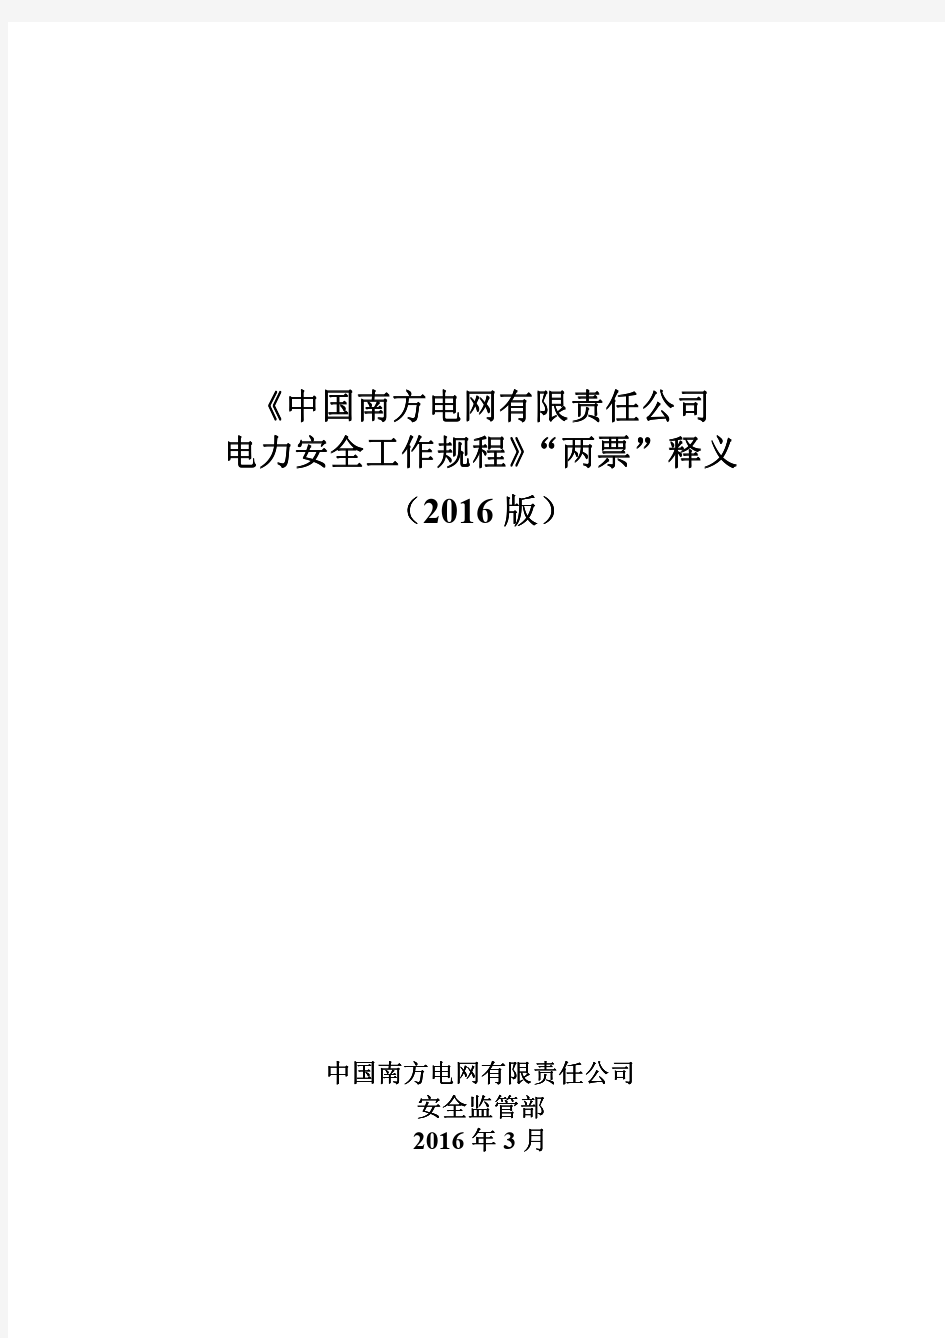 《中国南方电网有限责任公司电力安全工作规程》“两票”释义(2016版)